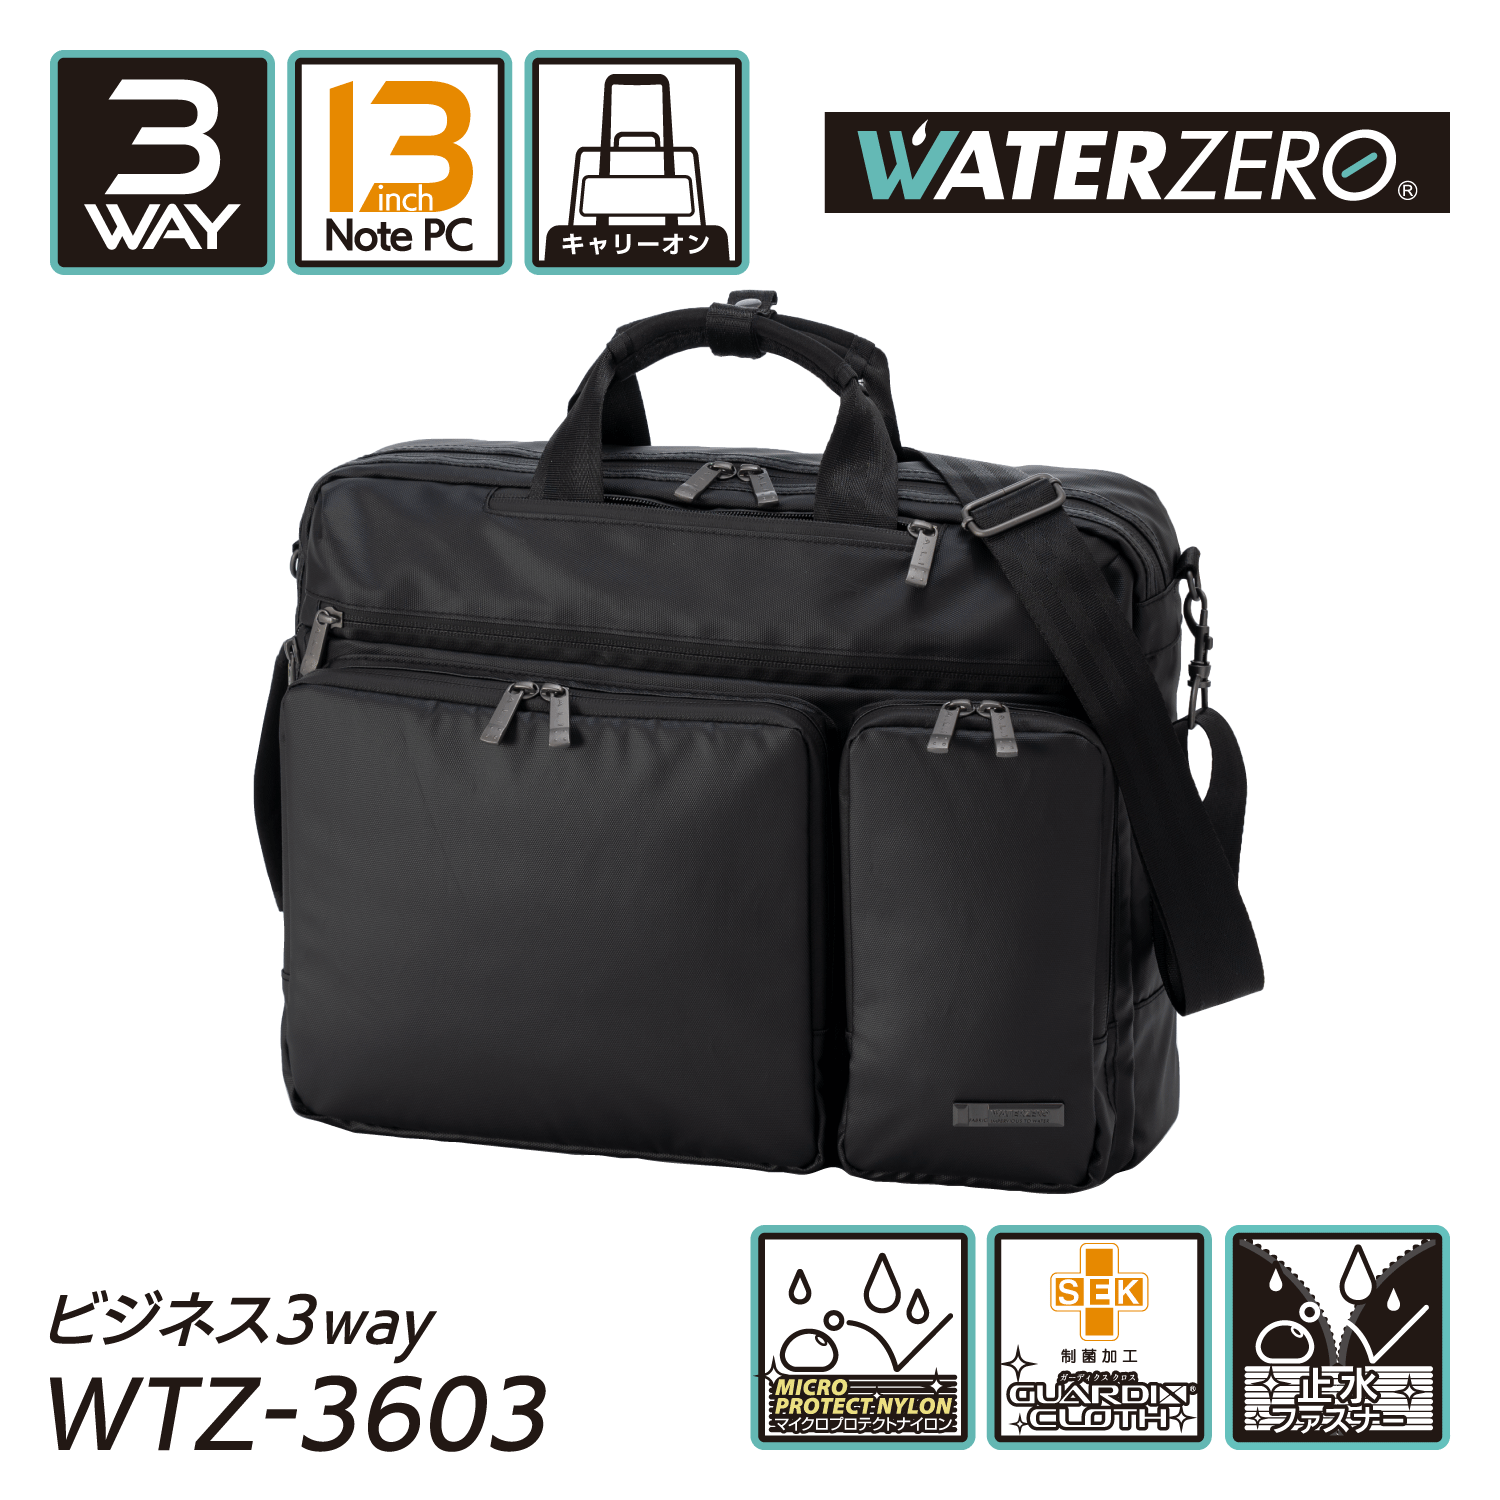 軽量・強撥水シリーズ 止水ファスナー搭載 抗菌加工 NEW WATER ZERO ビジネス3WAY WTZ-3603